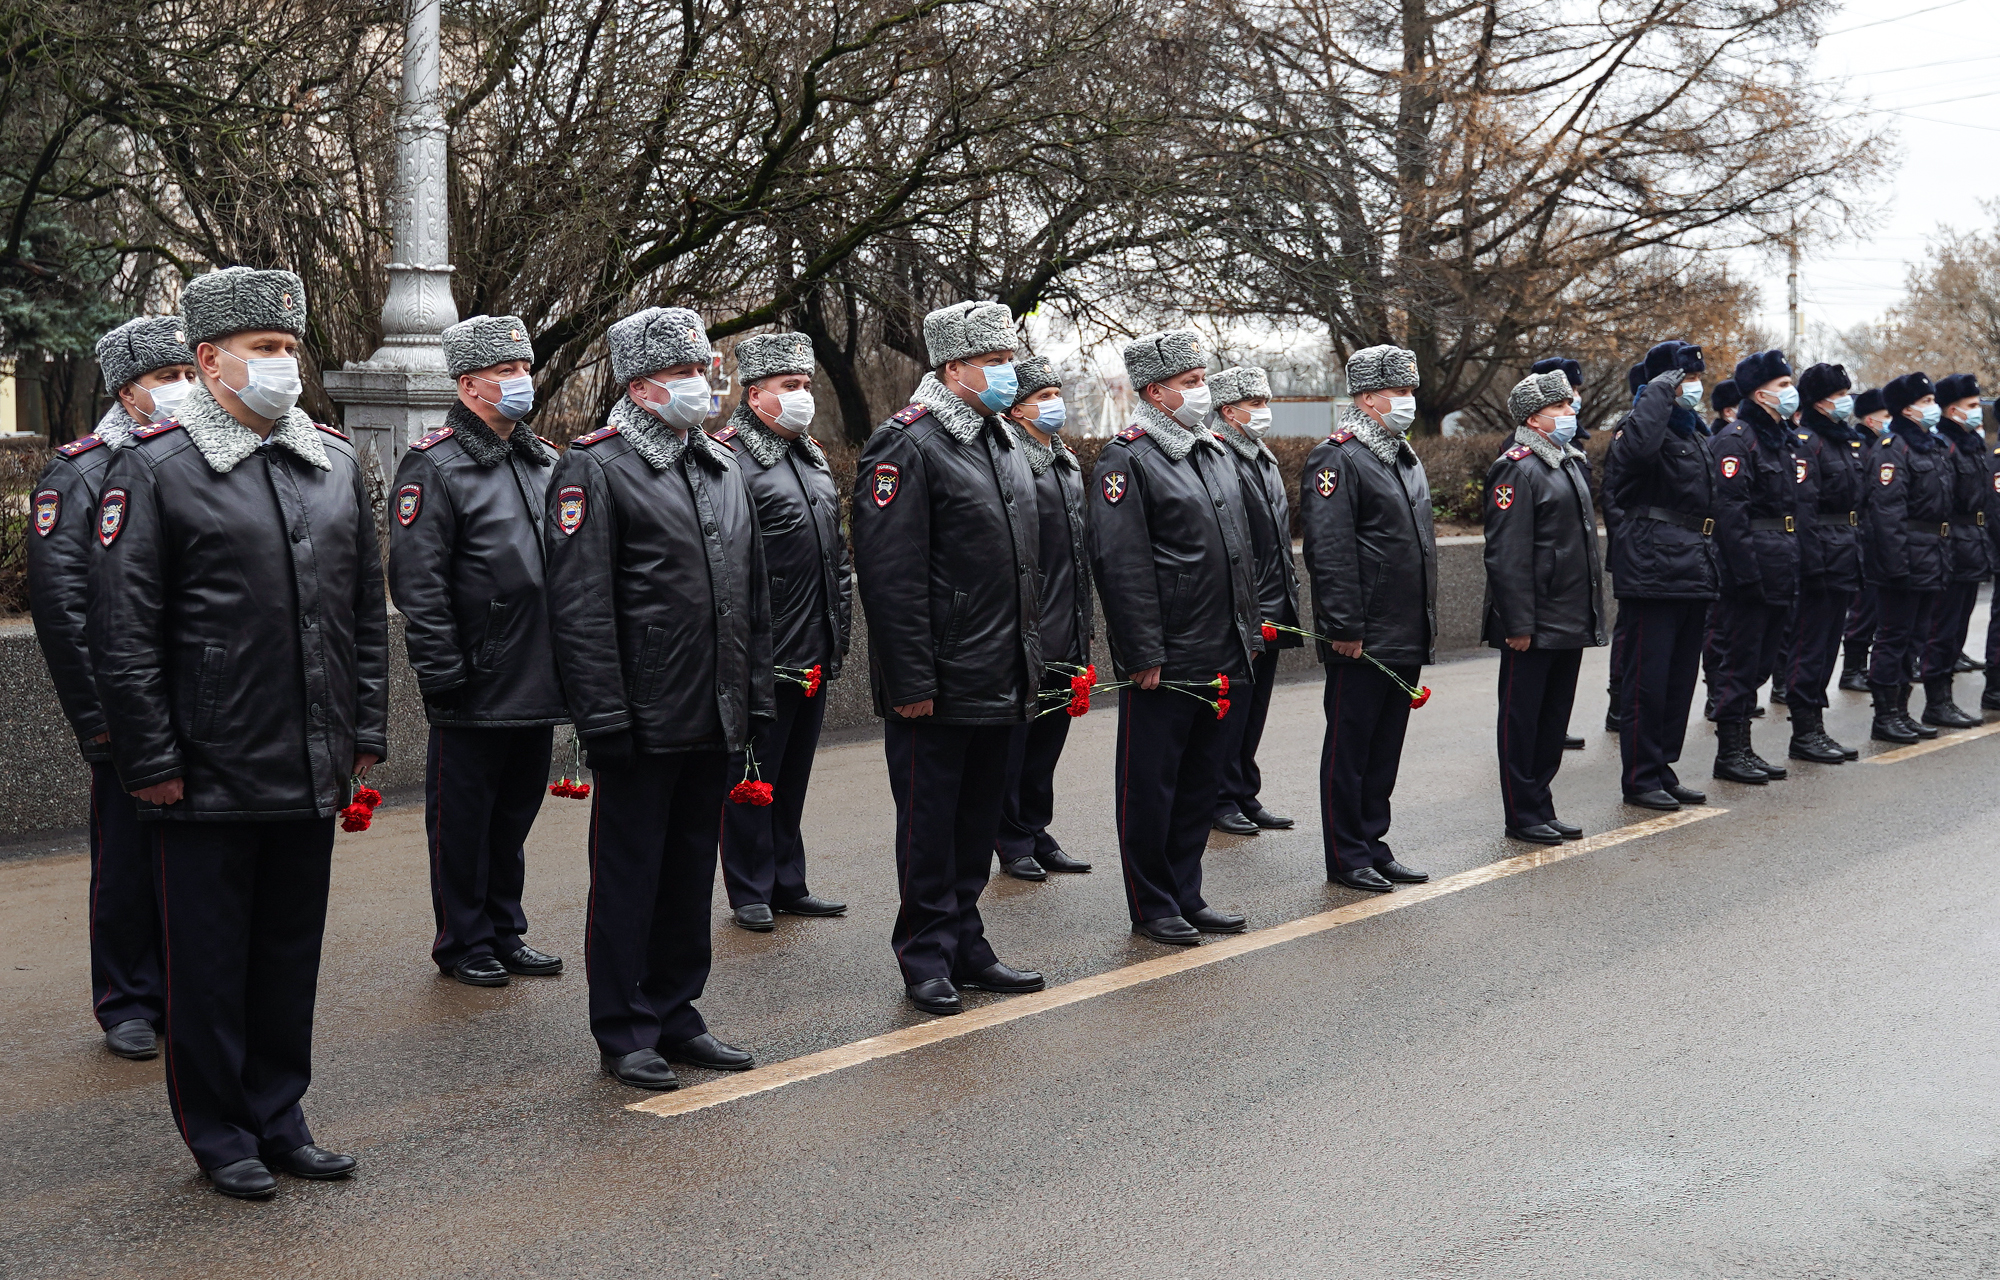 Игорь Руденя принял участие в траурном митинге в память о погибших сотрудниках органов внутренних дел